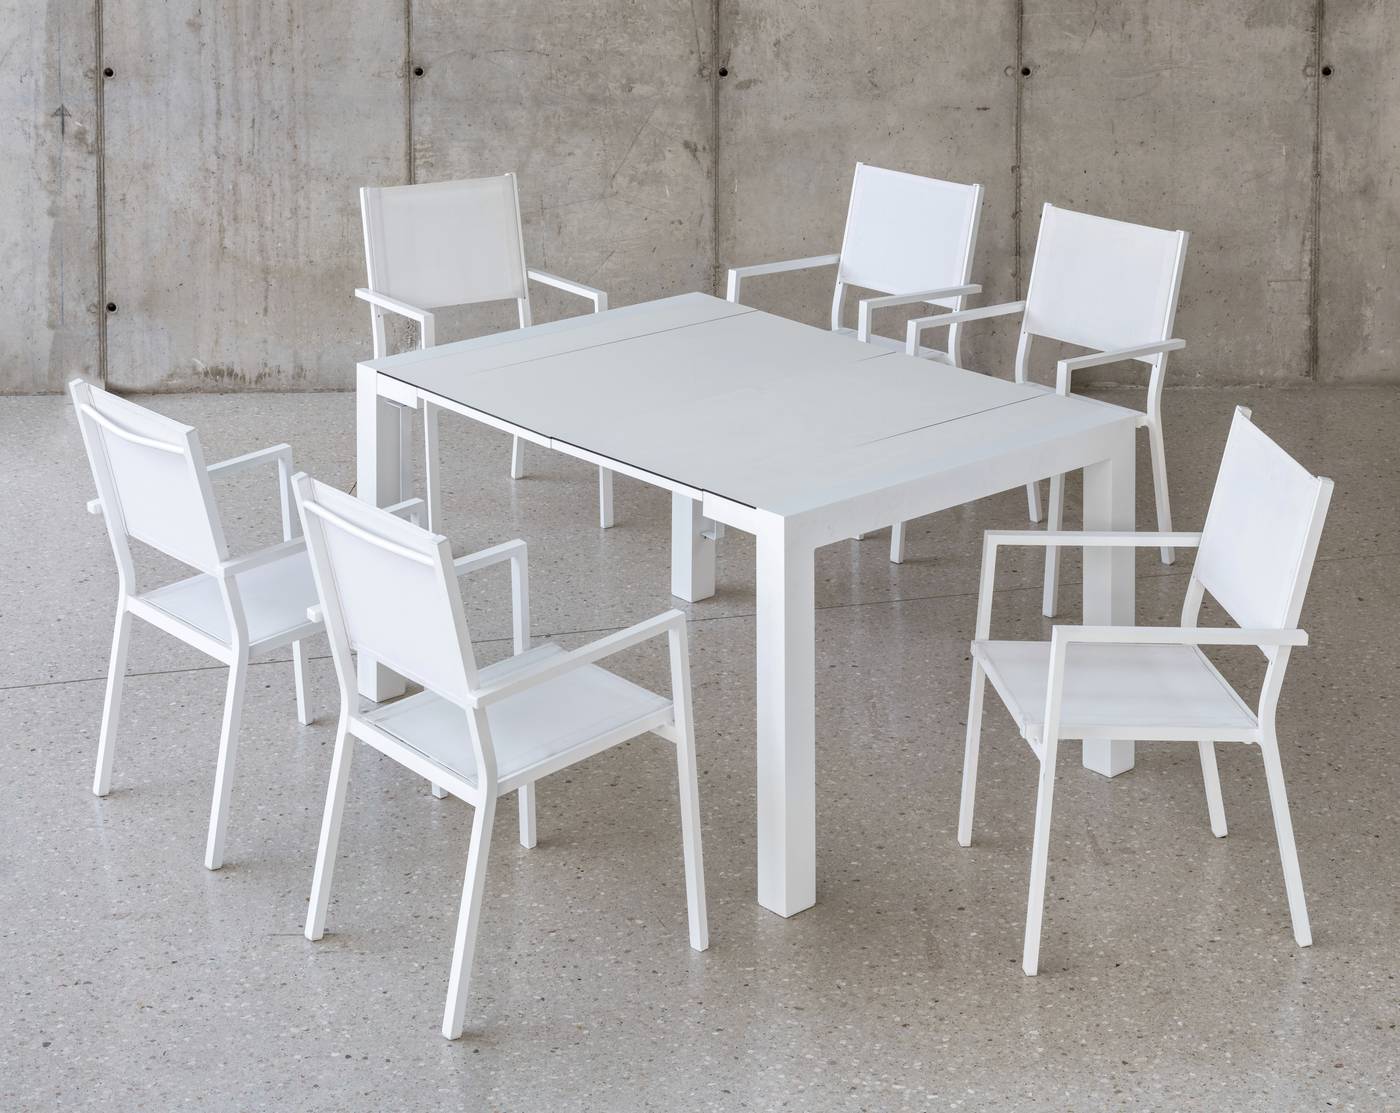 Conjunto de aluminio: mesa extensible con tablero HPL + 4 sillones de textilen. Disponible en color blanco o antracita.